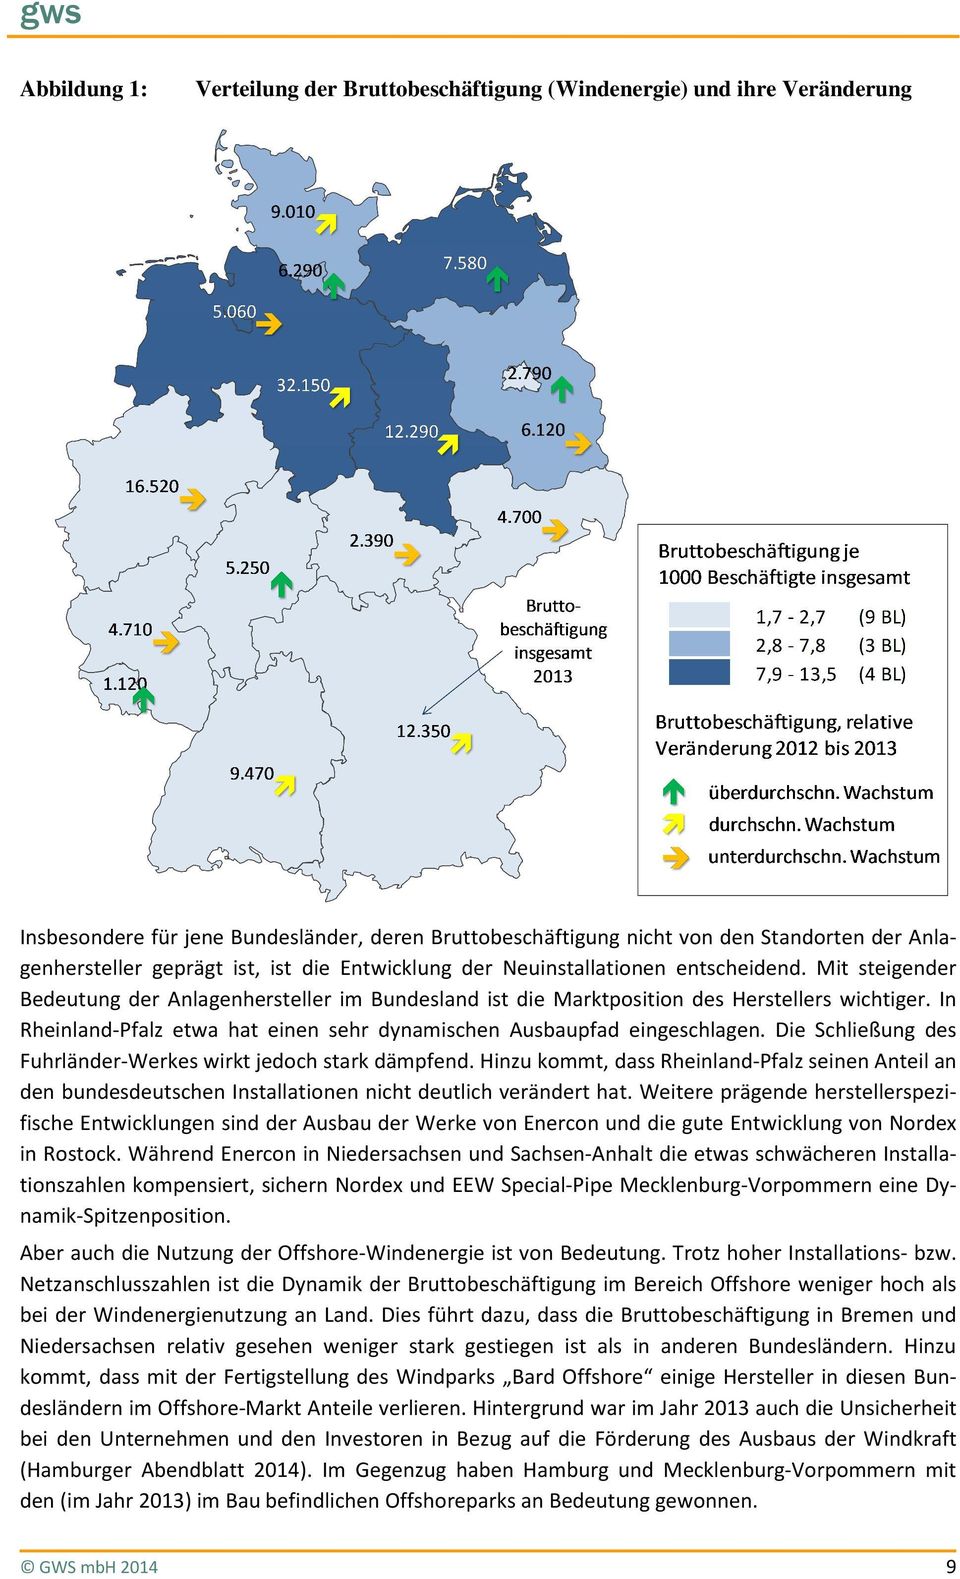 In Rheinland-Pfalz etwa hat einen sehr dynamischen Ausbaupfad eingeschlagen. Die Schließung des Fuhrländer-Werkes wirkt jedoch stark dämpfend.